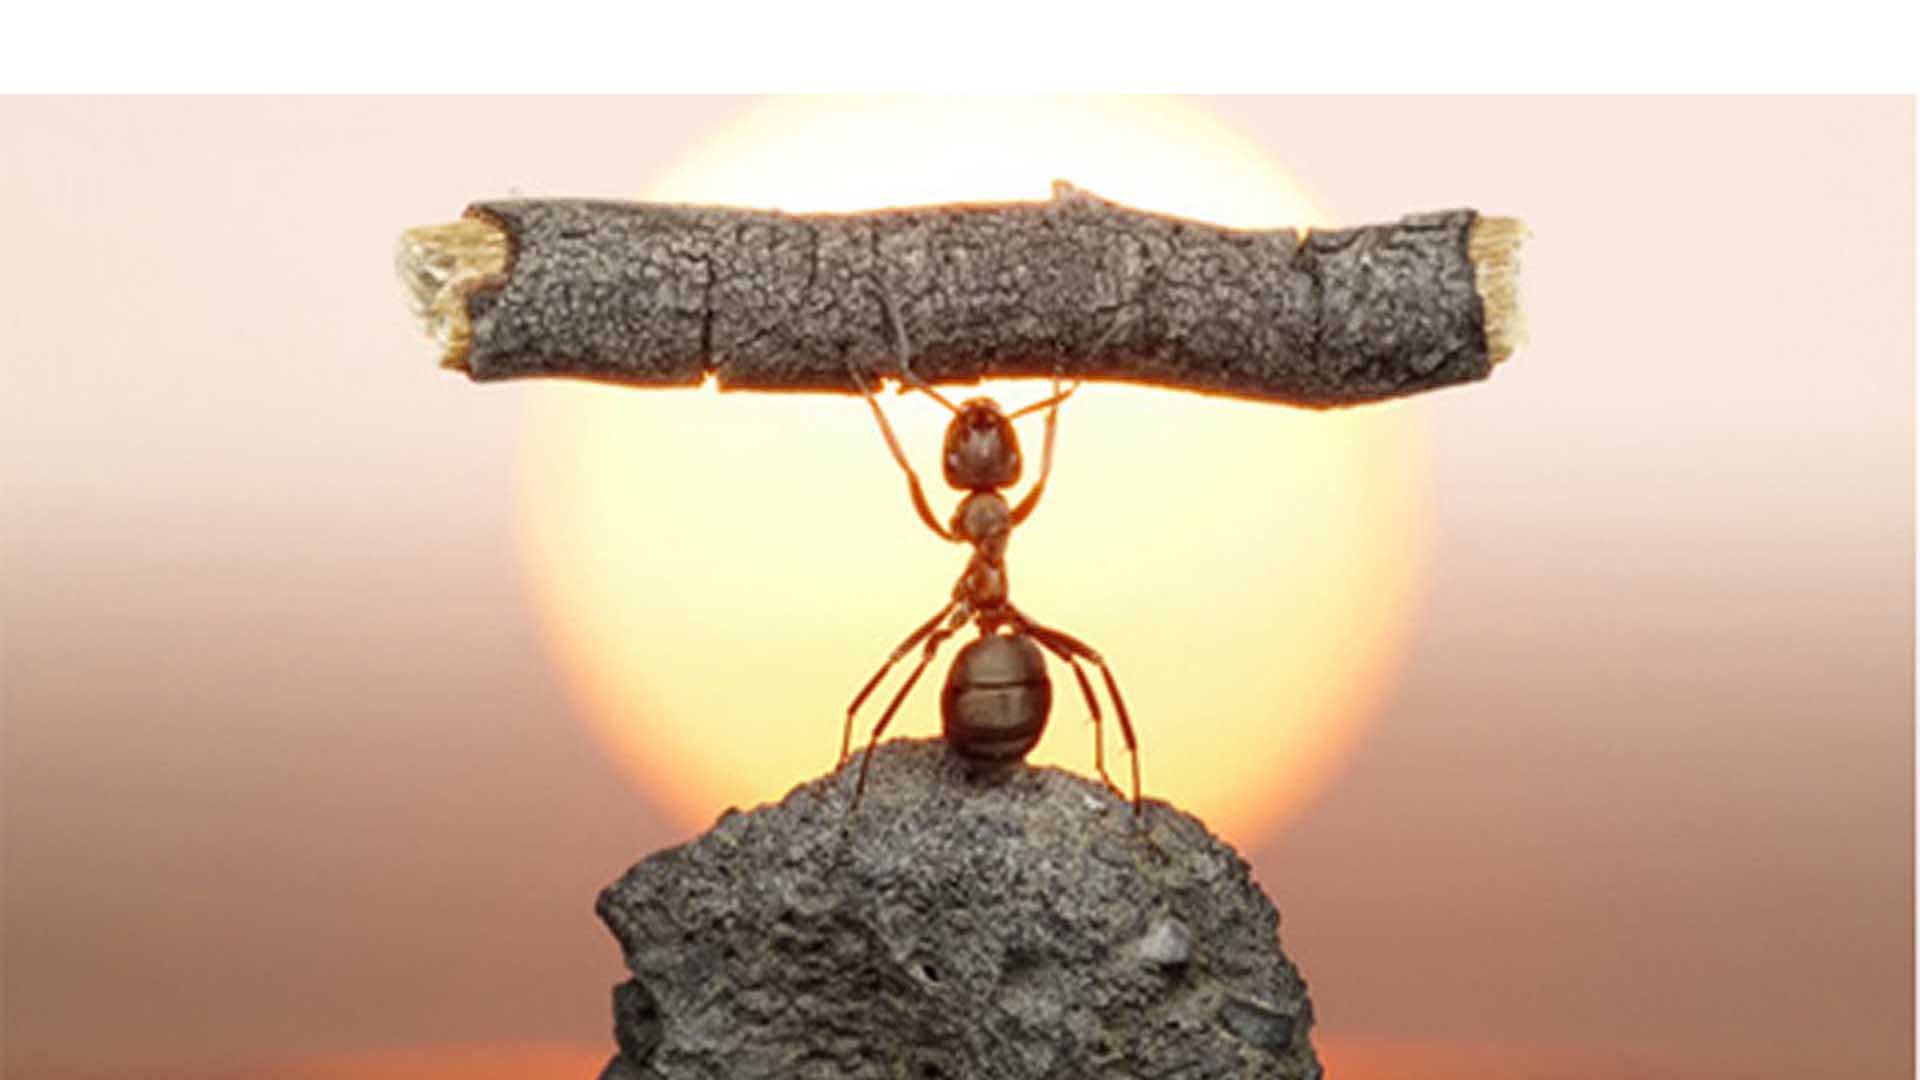 Científicos de Boston descubren una hormiga que jamás envejece aparentemente por el perfecto orden de su vida